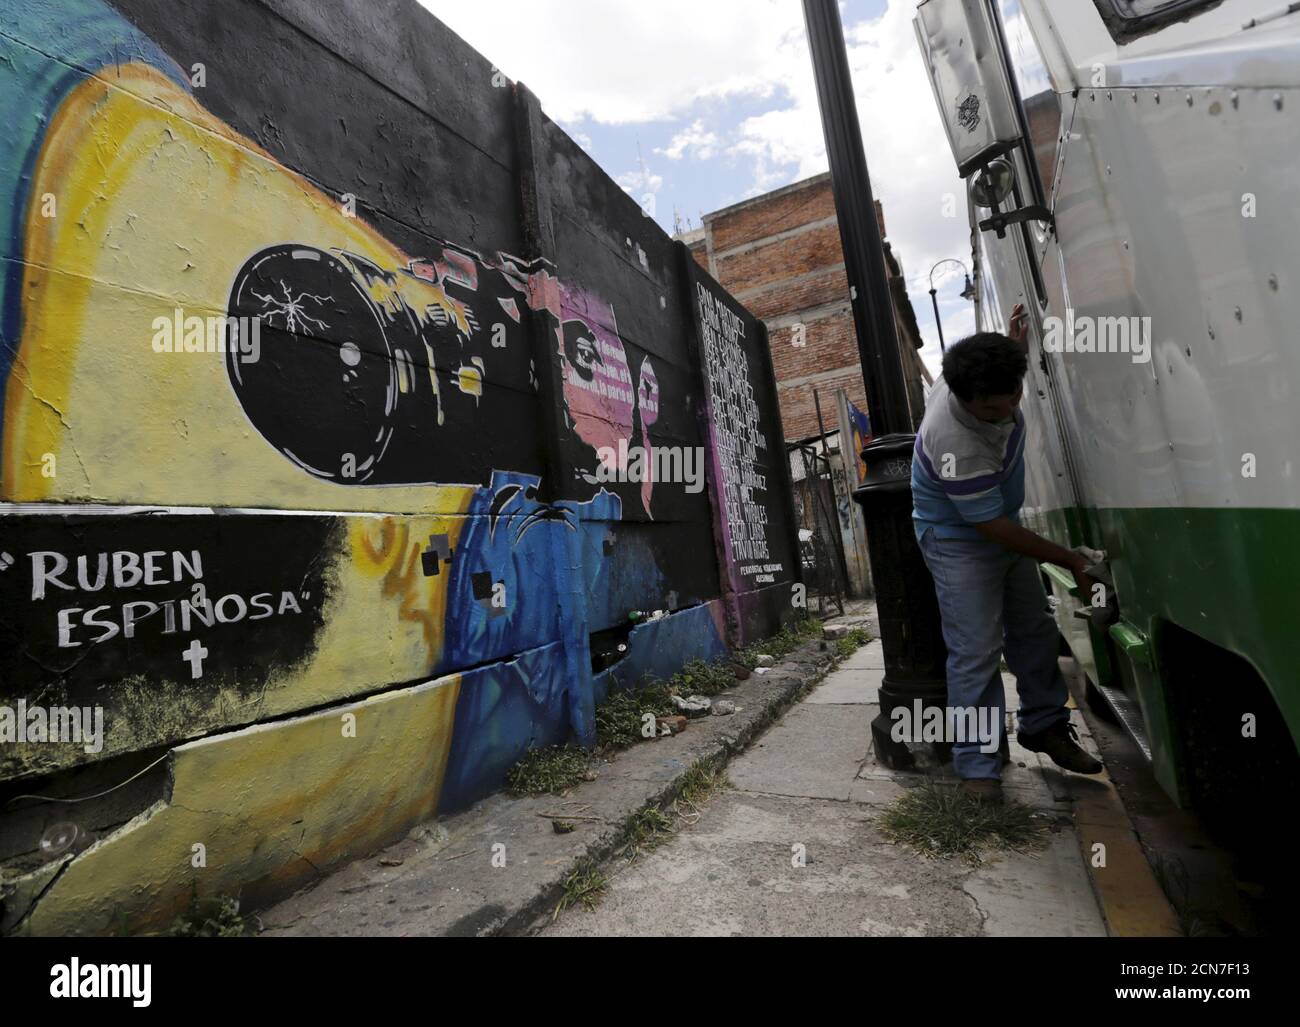 Un hombre limpia un autobús cerca de una pared con una imagen que  representa al destacado fotógrafo de noticias mexicano Rubén Espinosa,  quien fue asesinado junto con otras cuatro mujeres, a lo